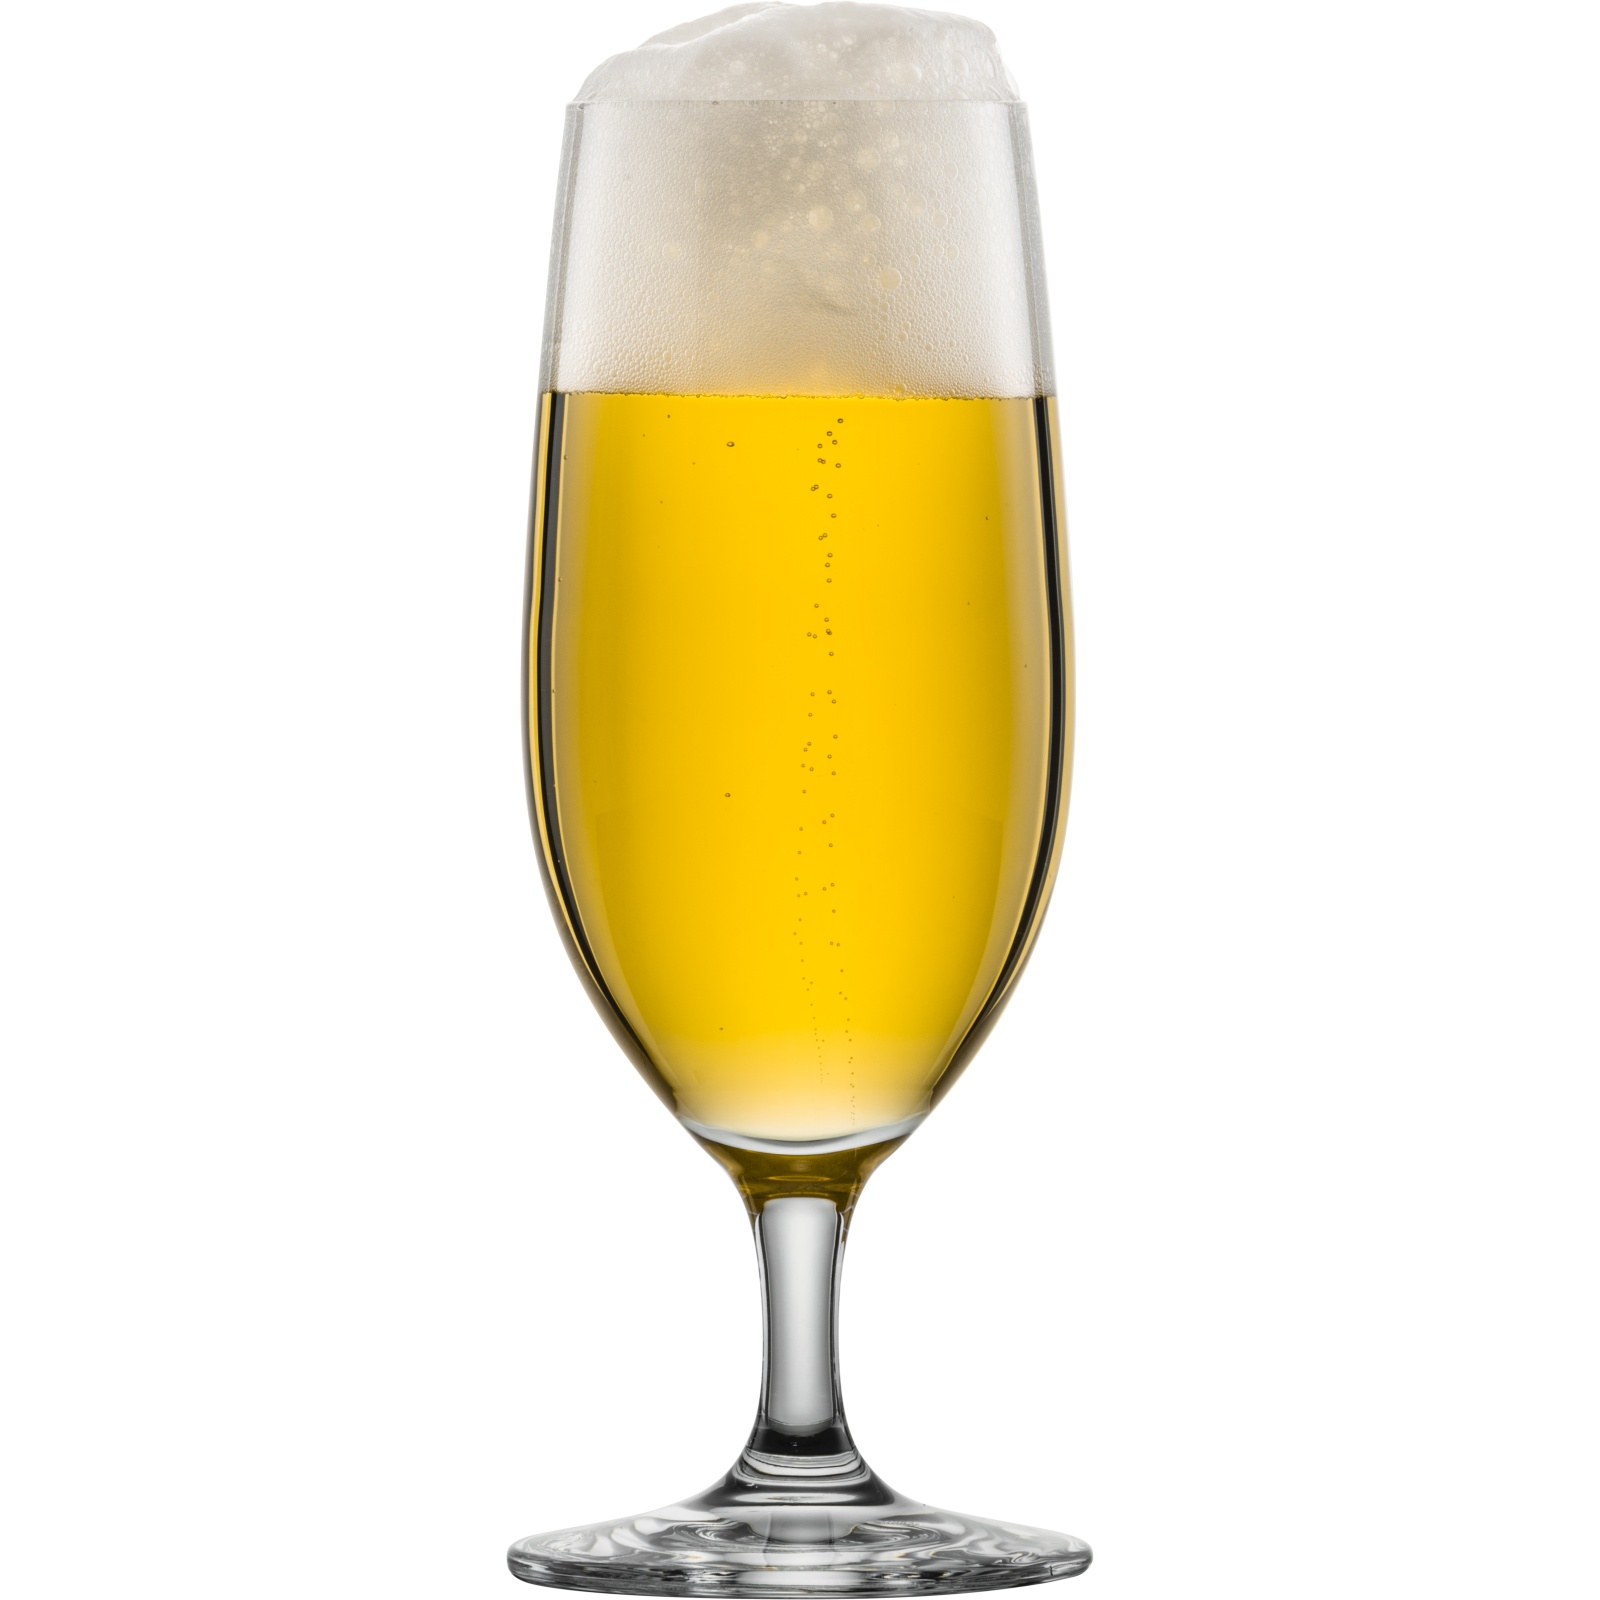 Voorschrijven Mexico zuiverheid Blanco Bierglazen kopen? Ruime keus onbedrukte bierglazen!